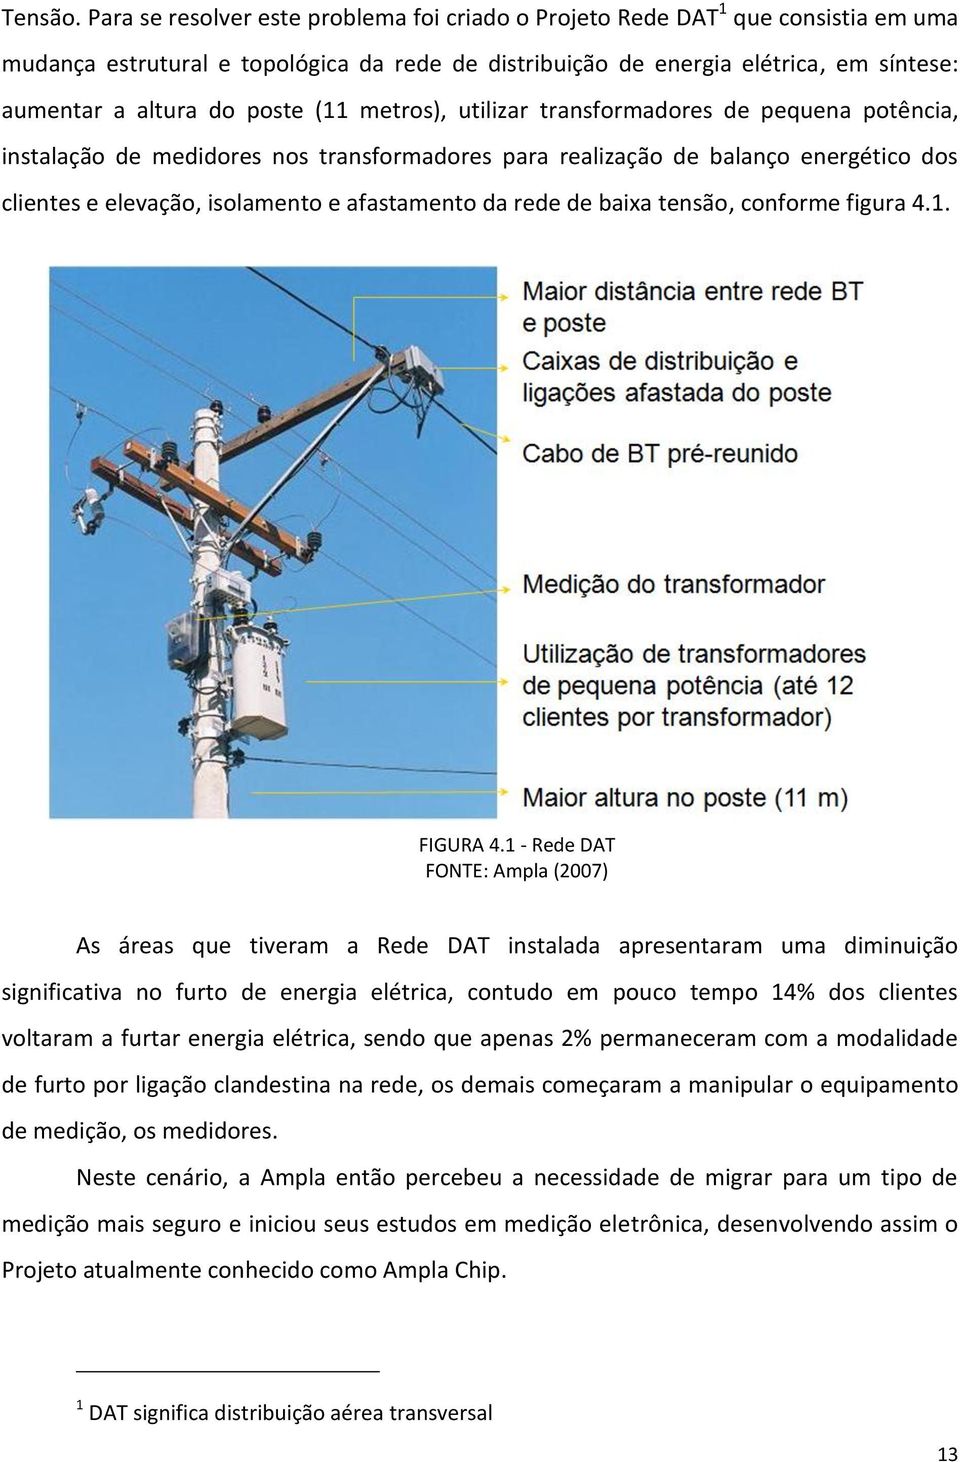 (11 metros), utilizar transformadores de pequena potência, instalação de medidores nos transformadores para realização de balanço energético dos clientes e elevação, isolamento e afastamento da rede